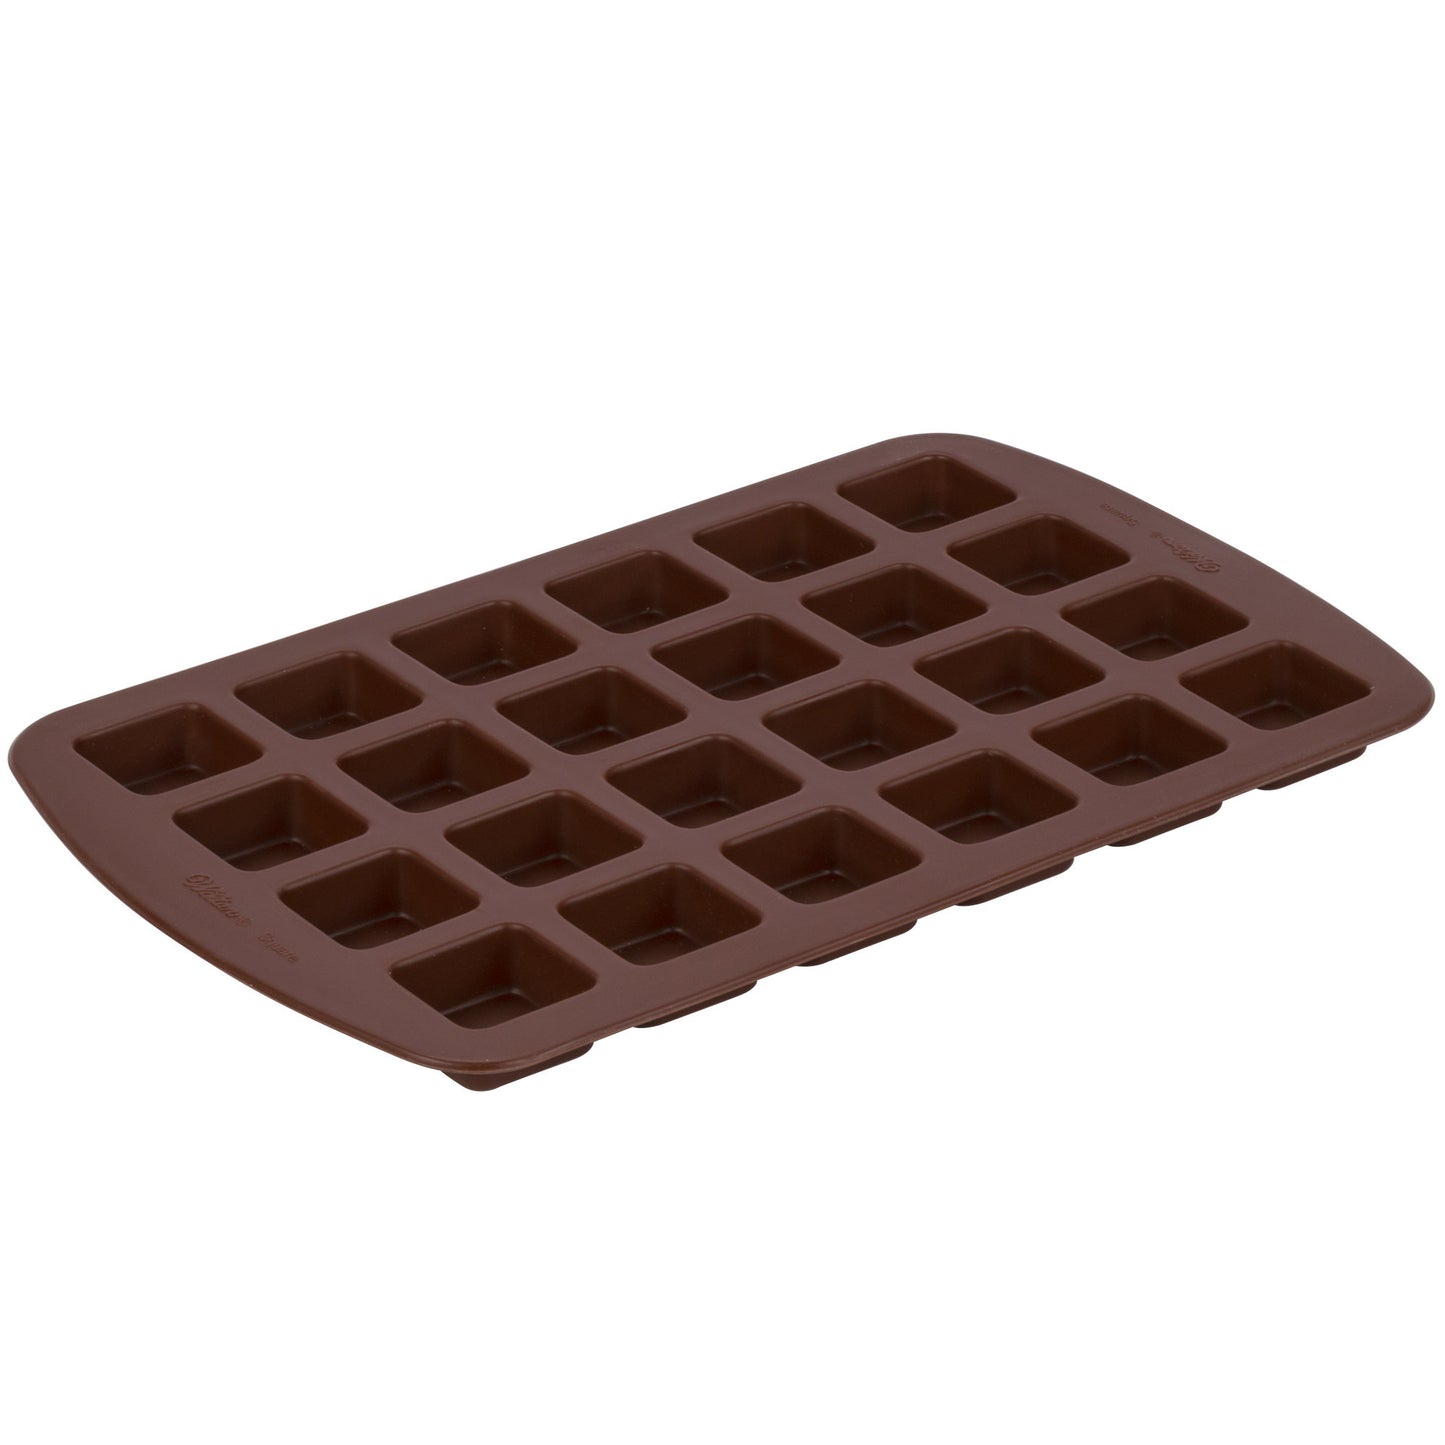 Brown Silicone 24 Compartment Square Bite-Size Brownie / Dessert Mold